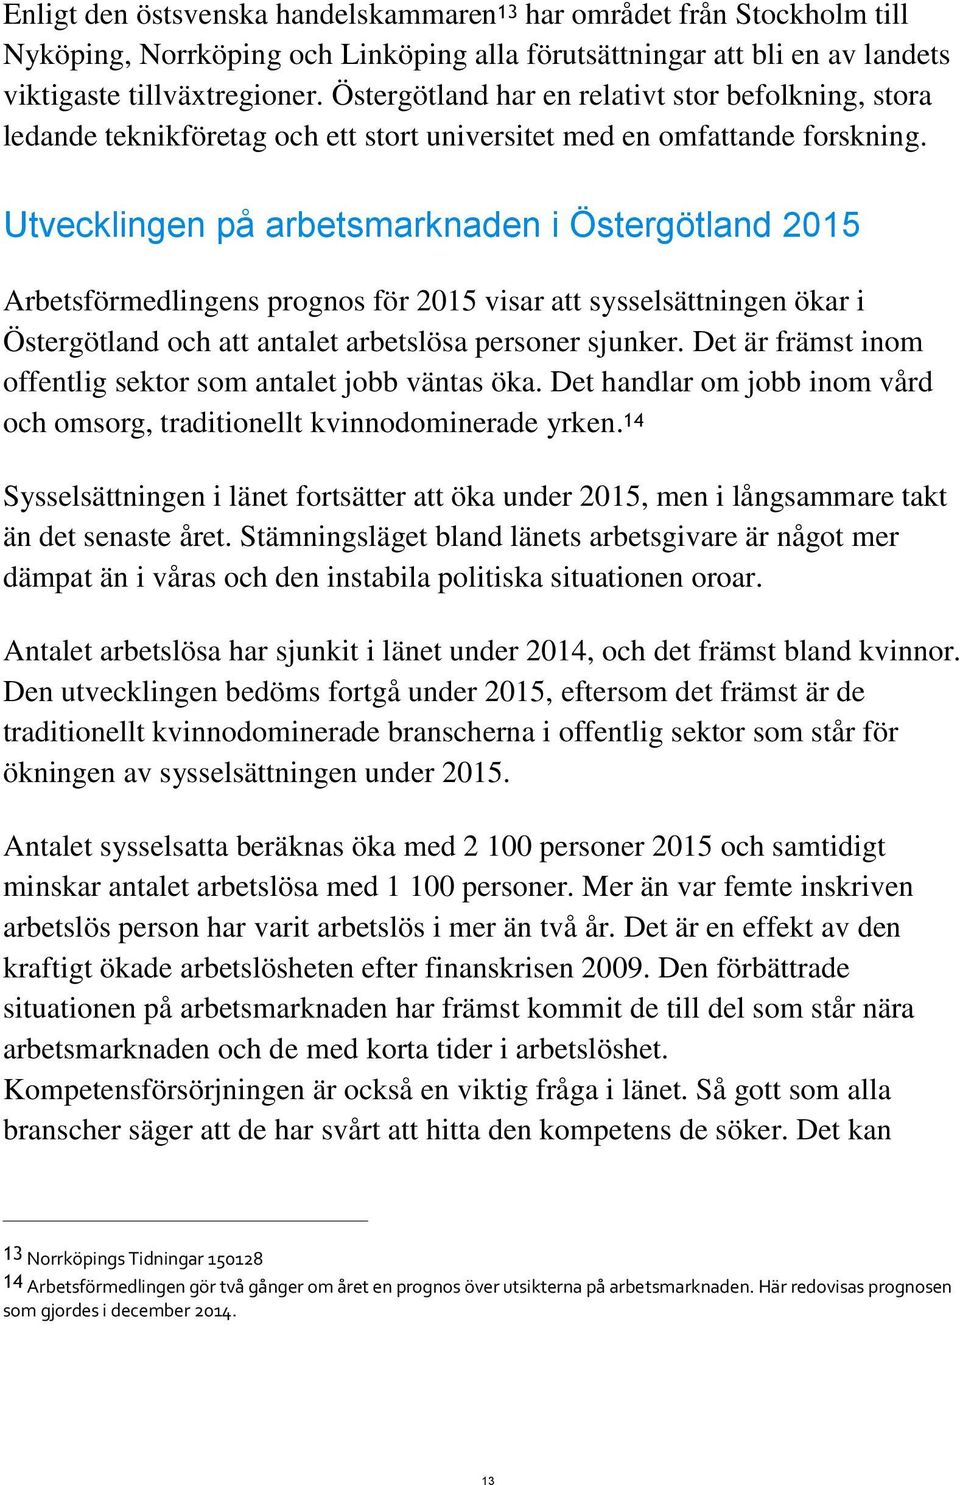 Utvecklingen på arbetsmarknaden i Östergötland 2015 Arbetsförmedlingens prognos för 2015 visar att sysselsättningen ökar i Östergötland och att antalet arbetslösa personer sjunker.